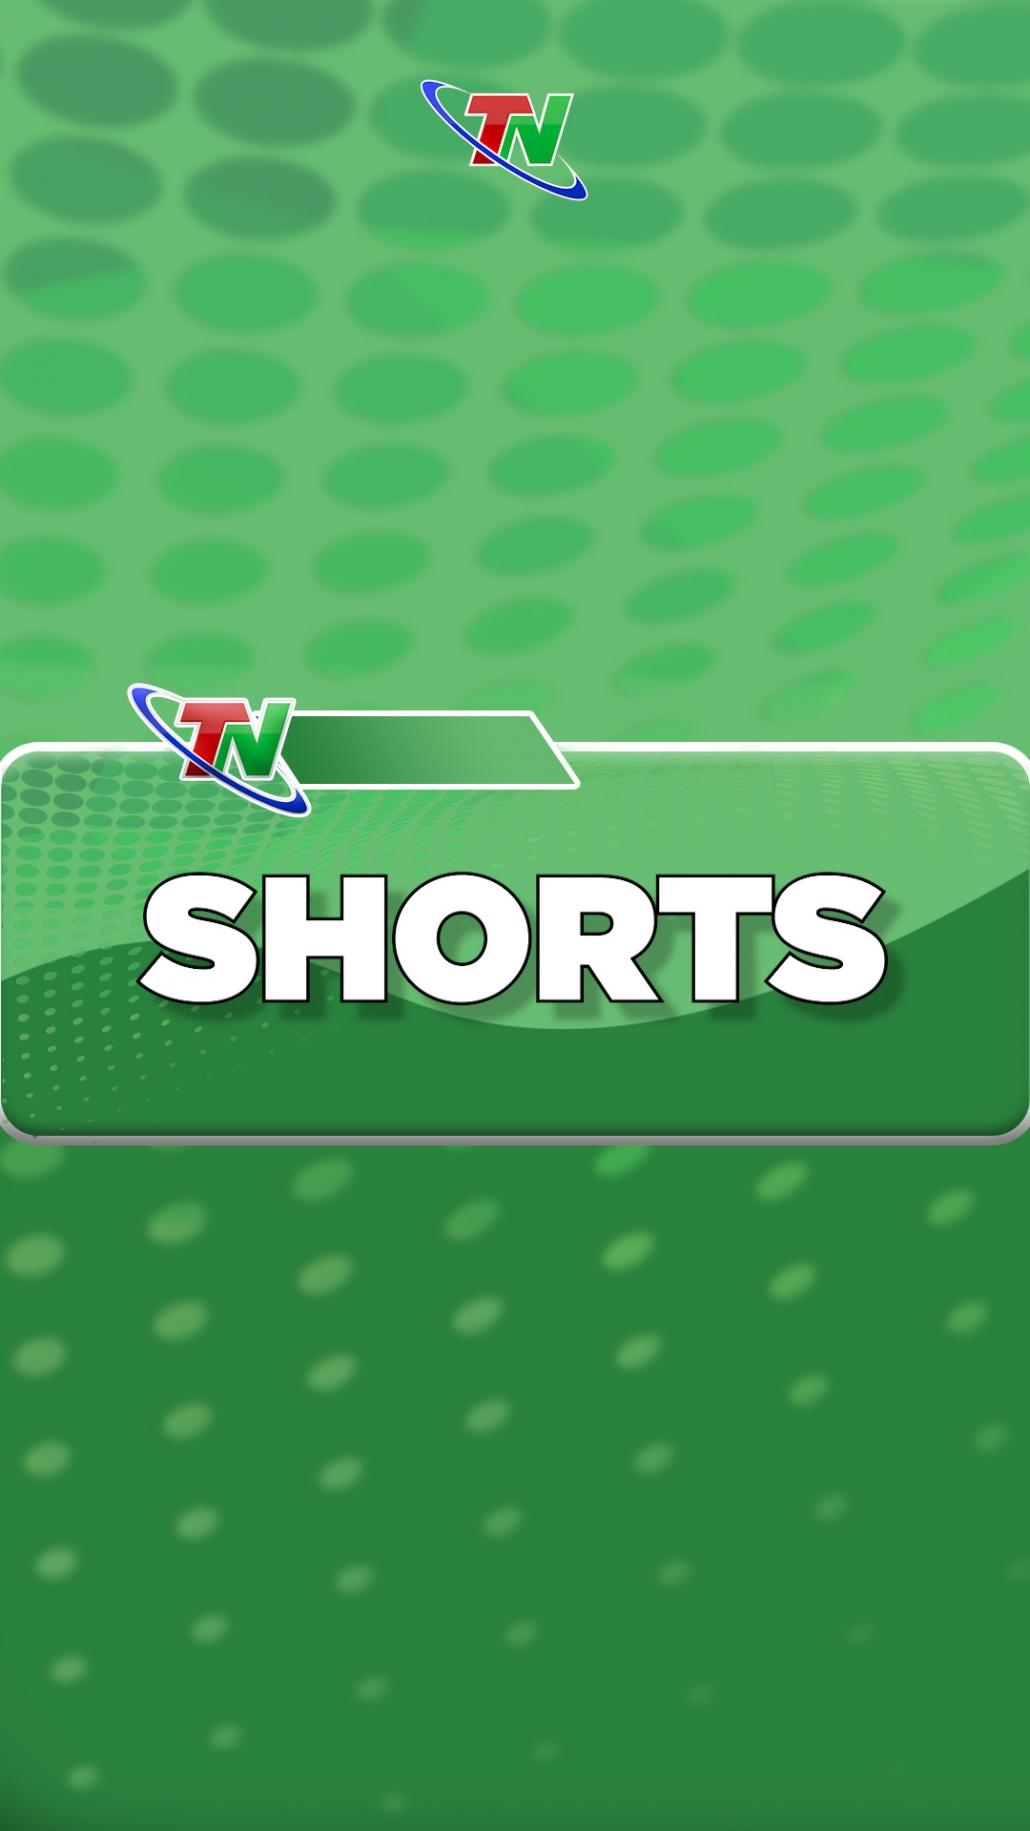 TP Hồ Chí Minh chuẩn bị mở lại 3 trung tâm đăng kiểm #shorts